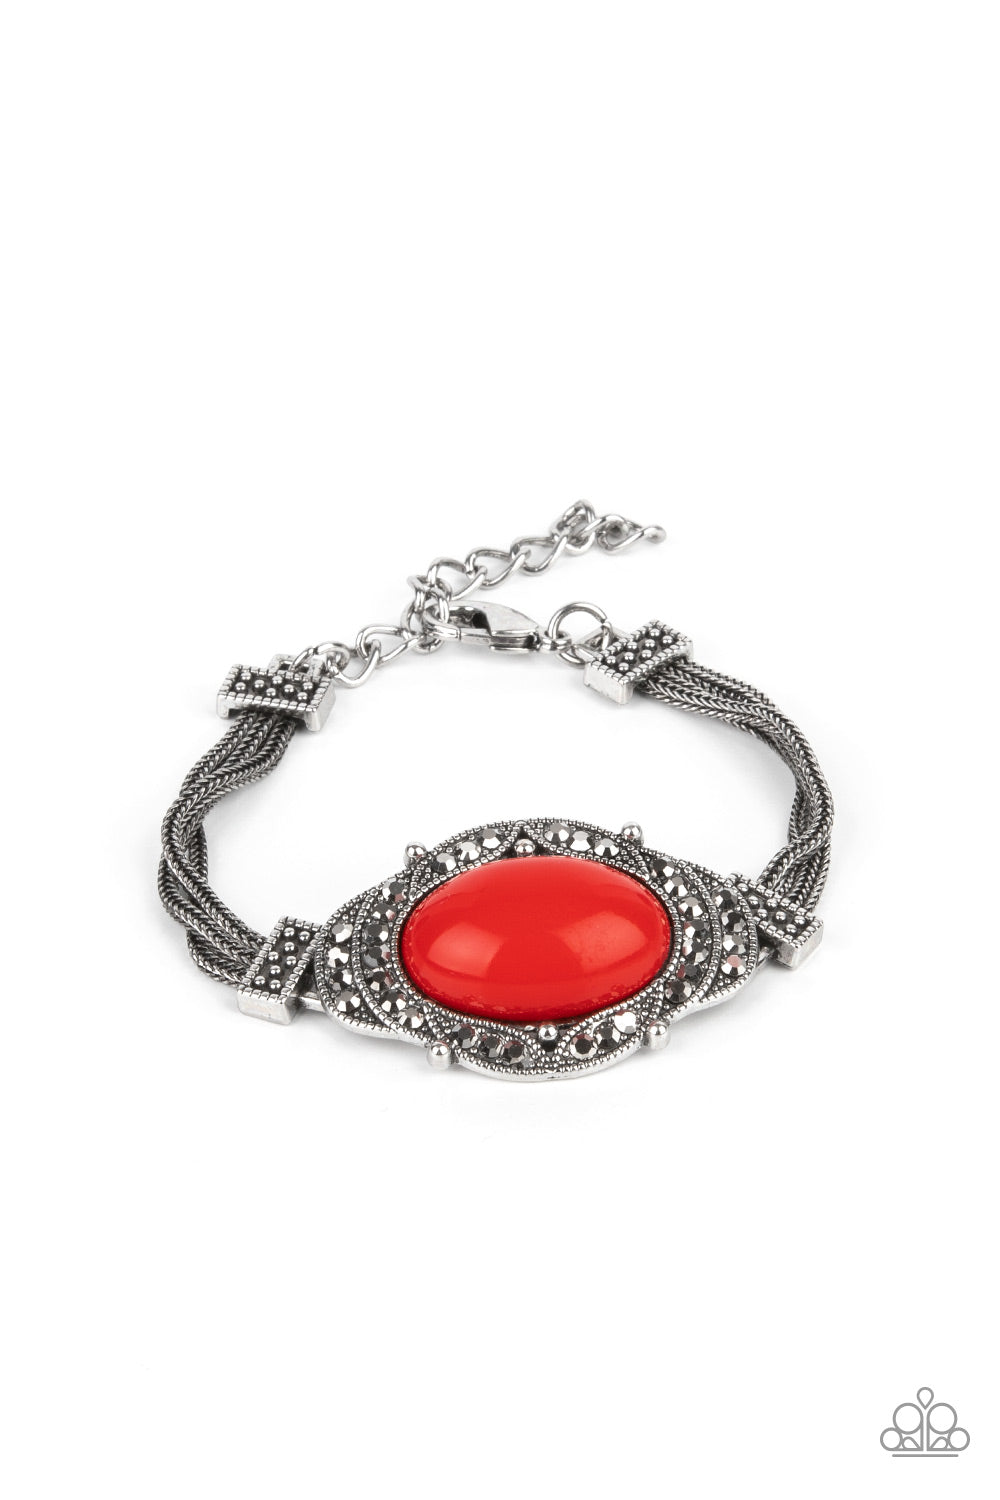 Paparazzi Top-Notch Drama Red Clasp Bracelet